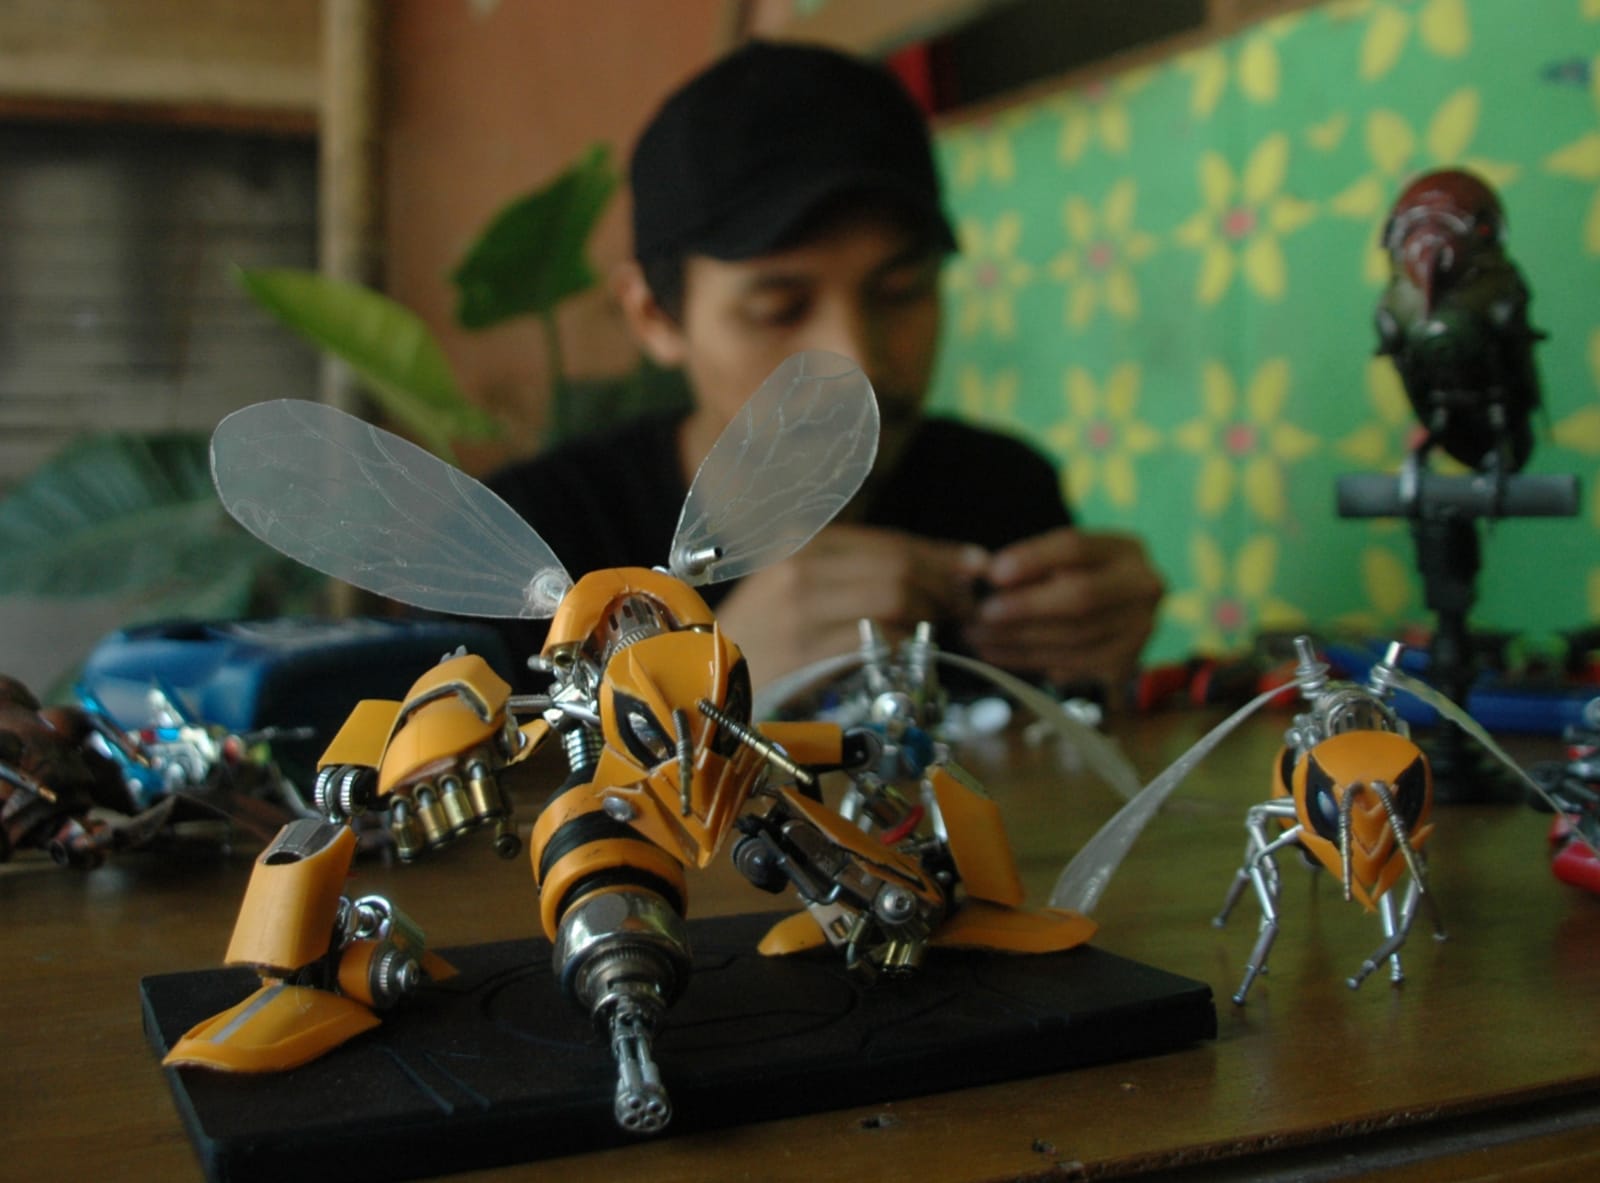 Terinspirasi Film Transformers, Pemuda Bogor Ciptakan Miniatur Robot dari Limbah